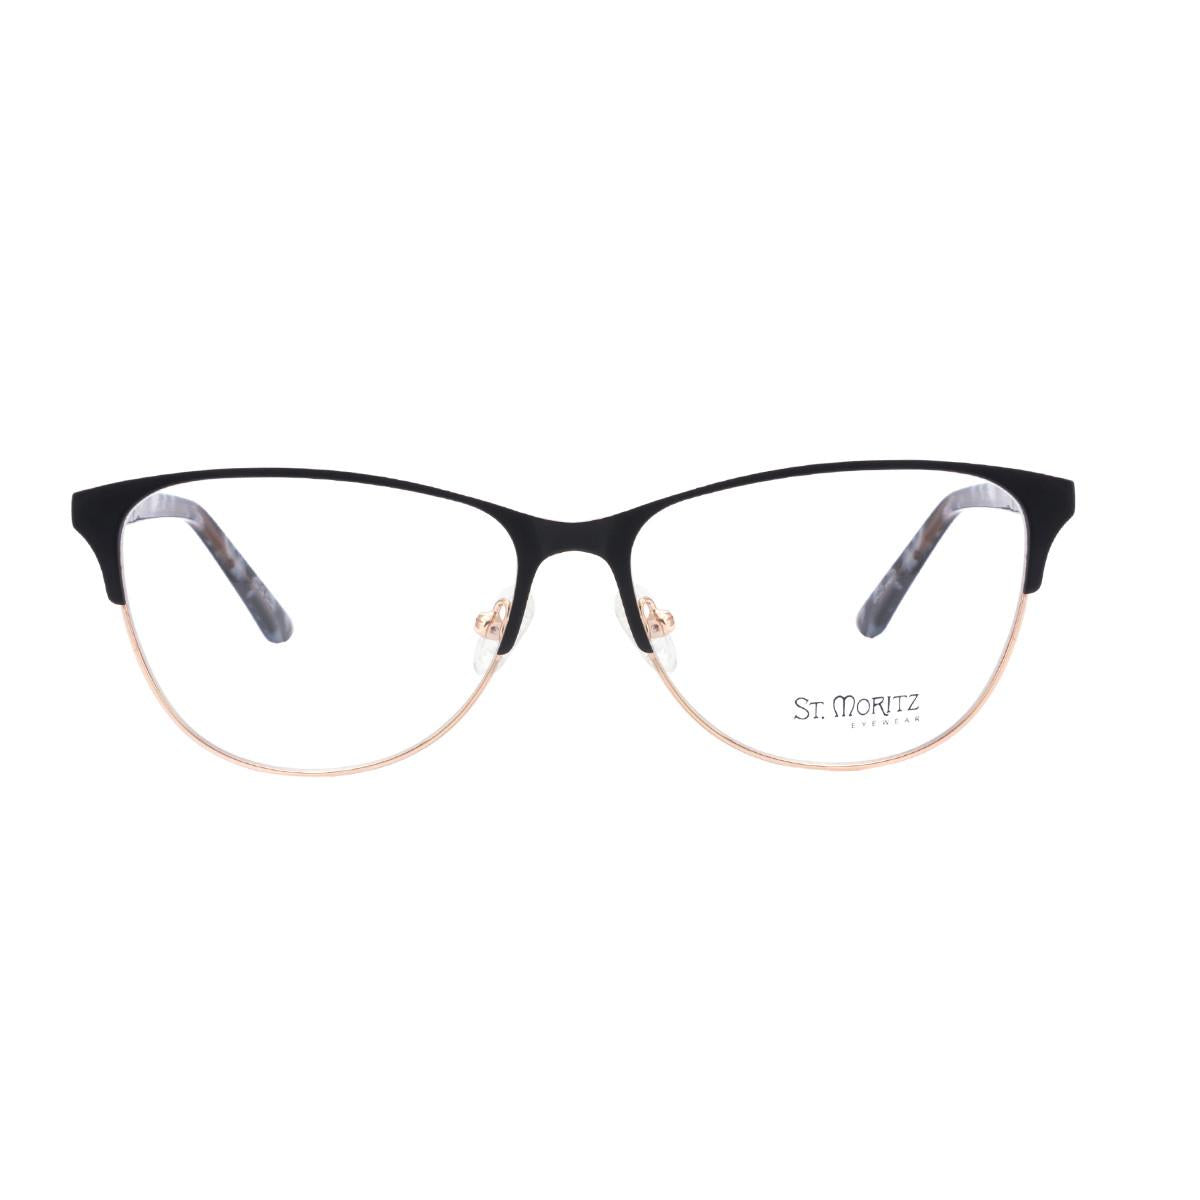 ST MORITZ 303 Eyeglasses